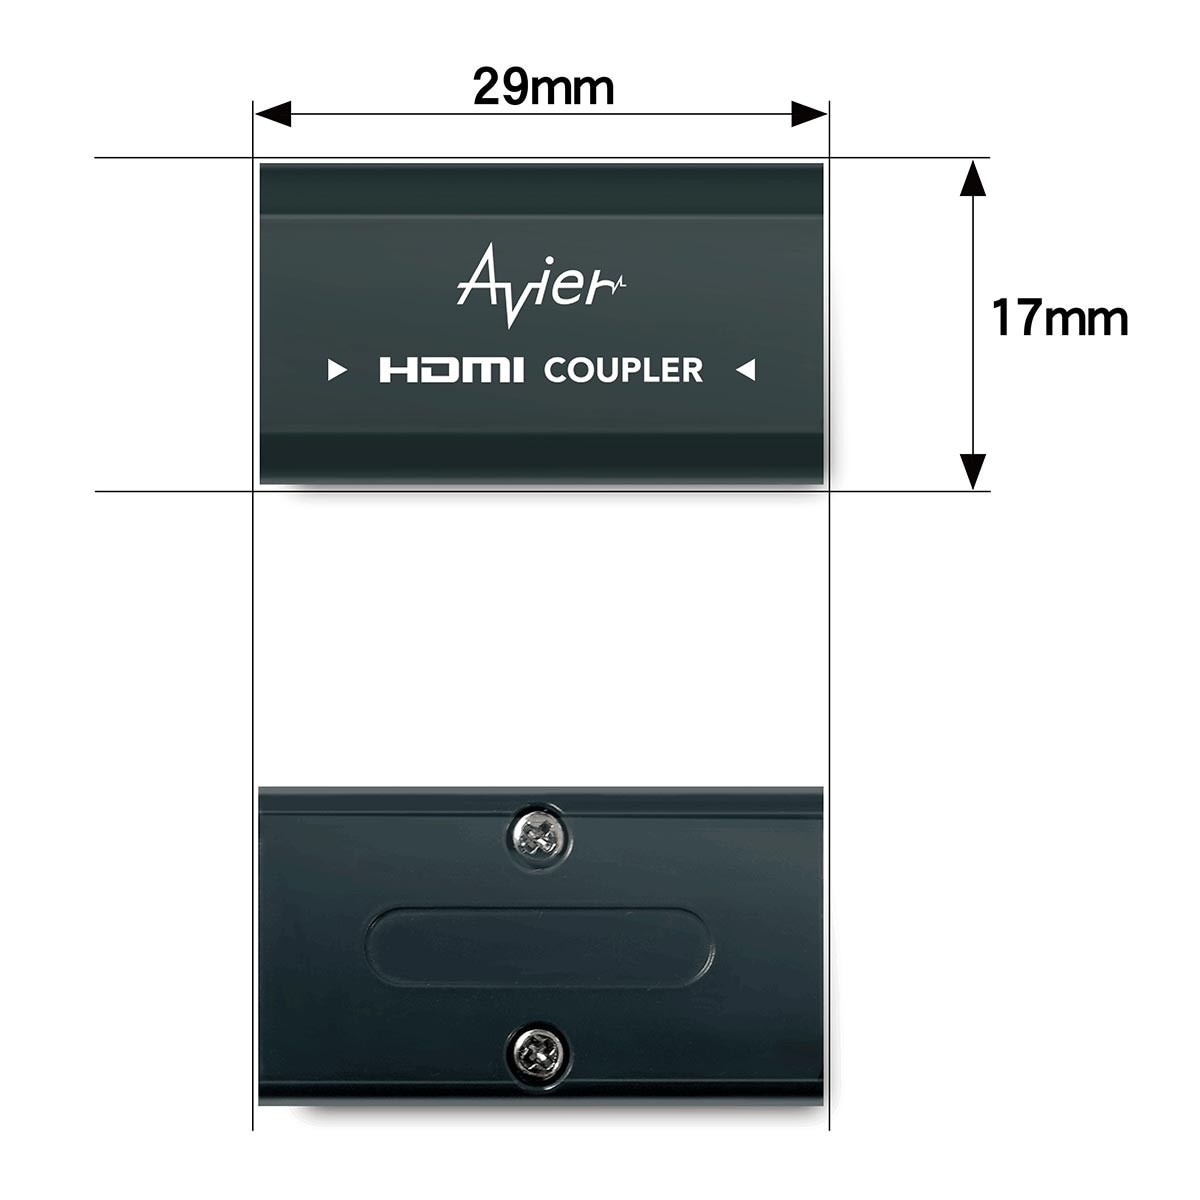 Avier 4K HDMI CABLE 2+1 行動組 AVCH001 (HDMI 2公尺2入+鋅合金HDMI 延長轉接頭)